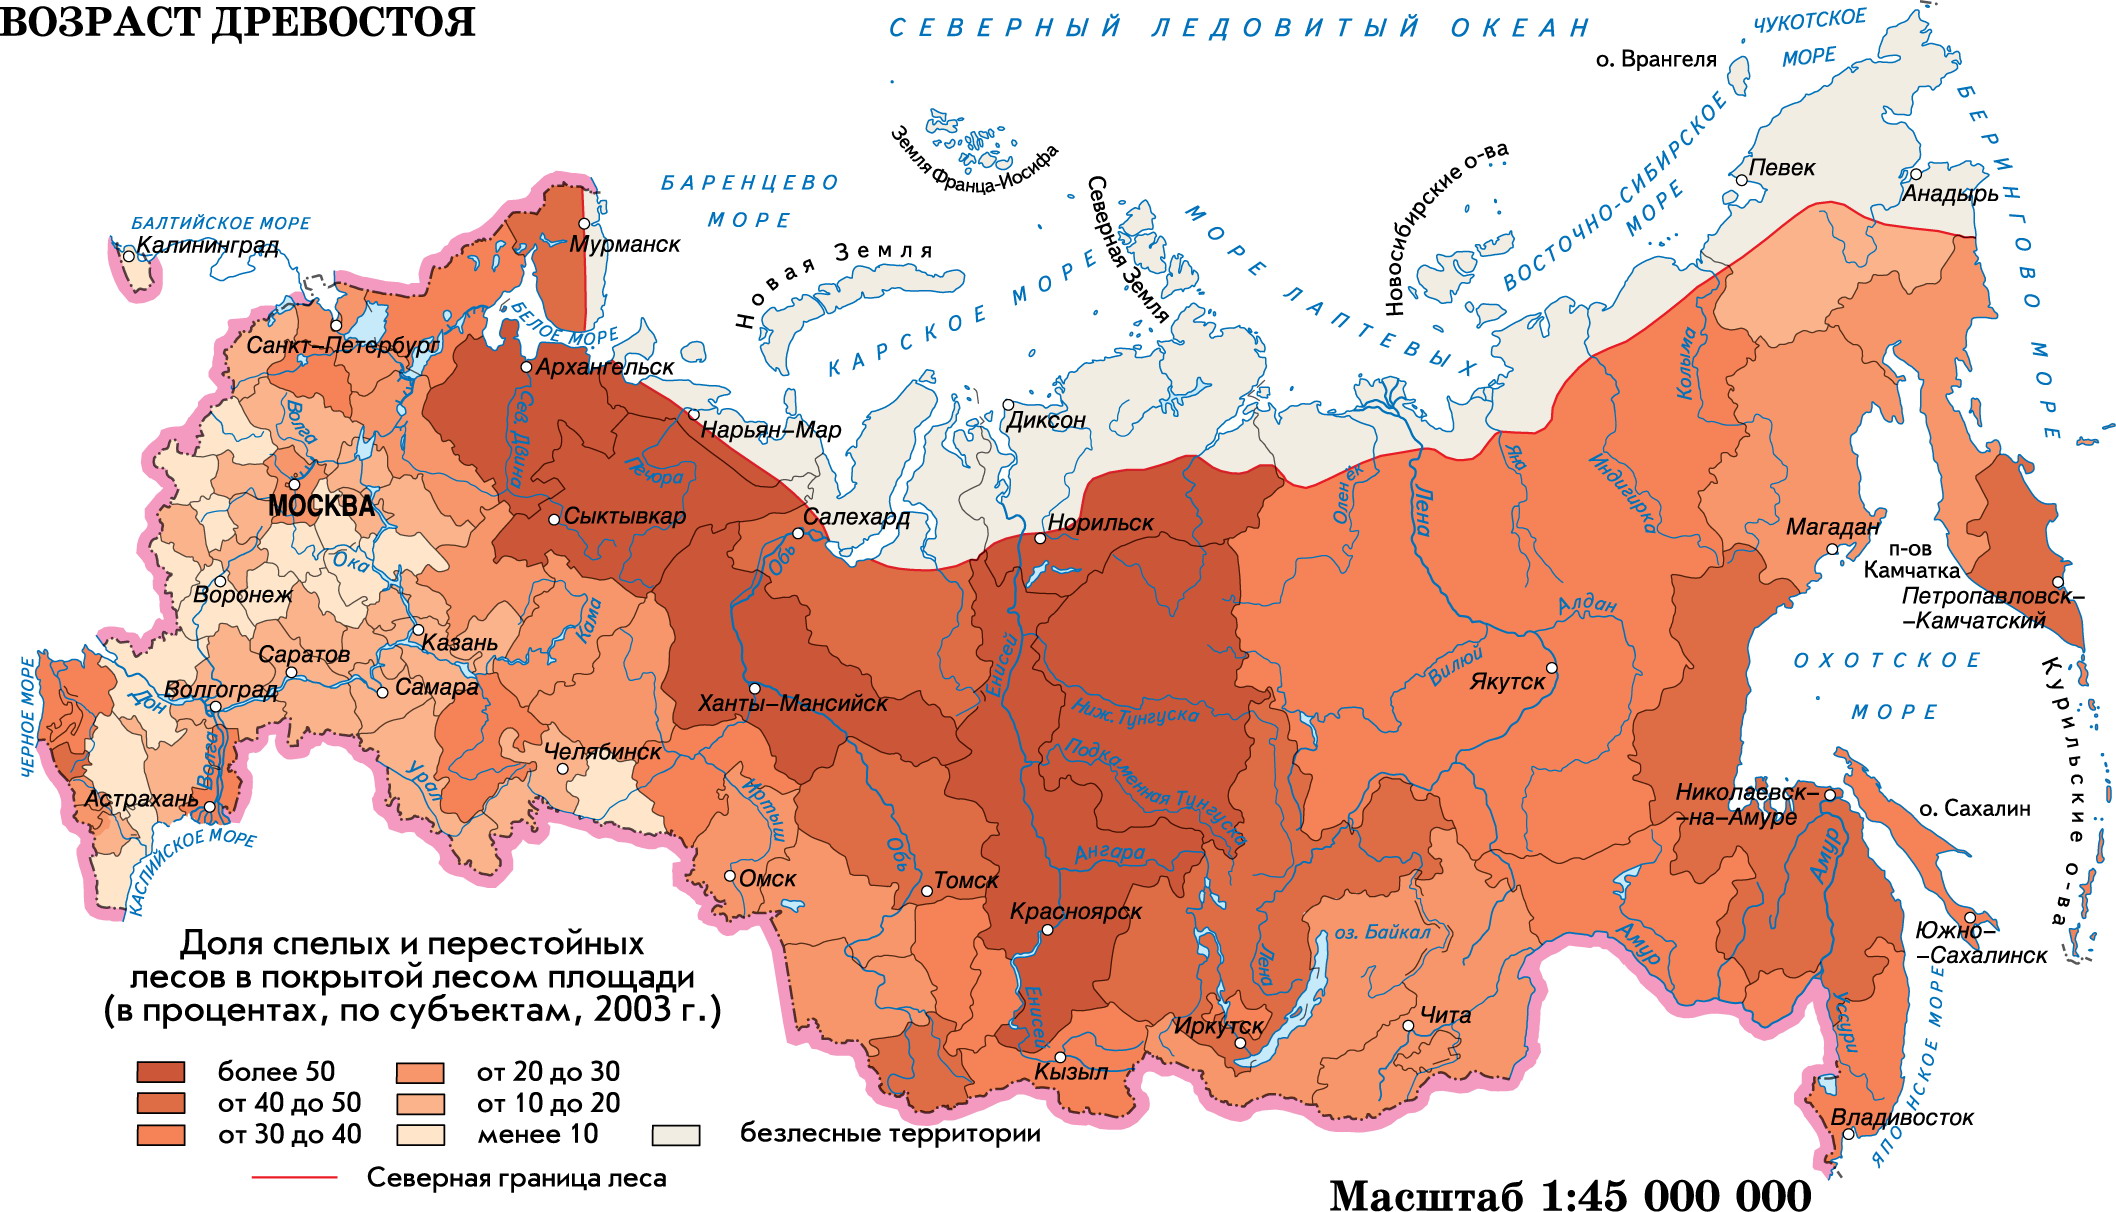 Вырубка леса в России на карте